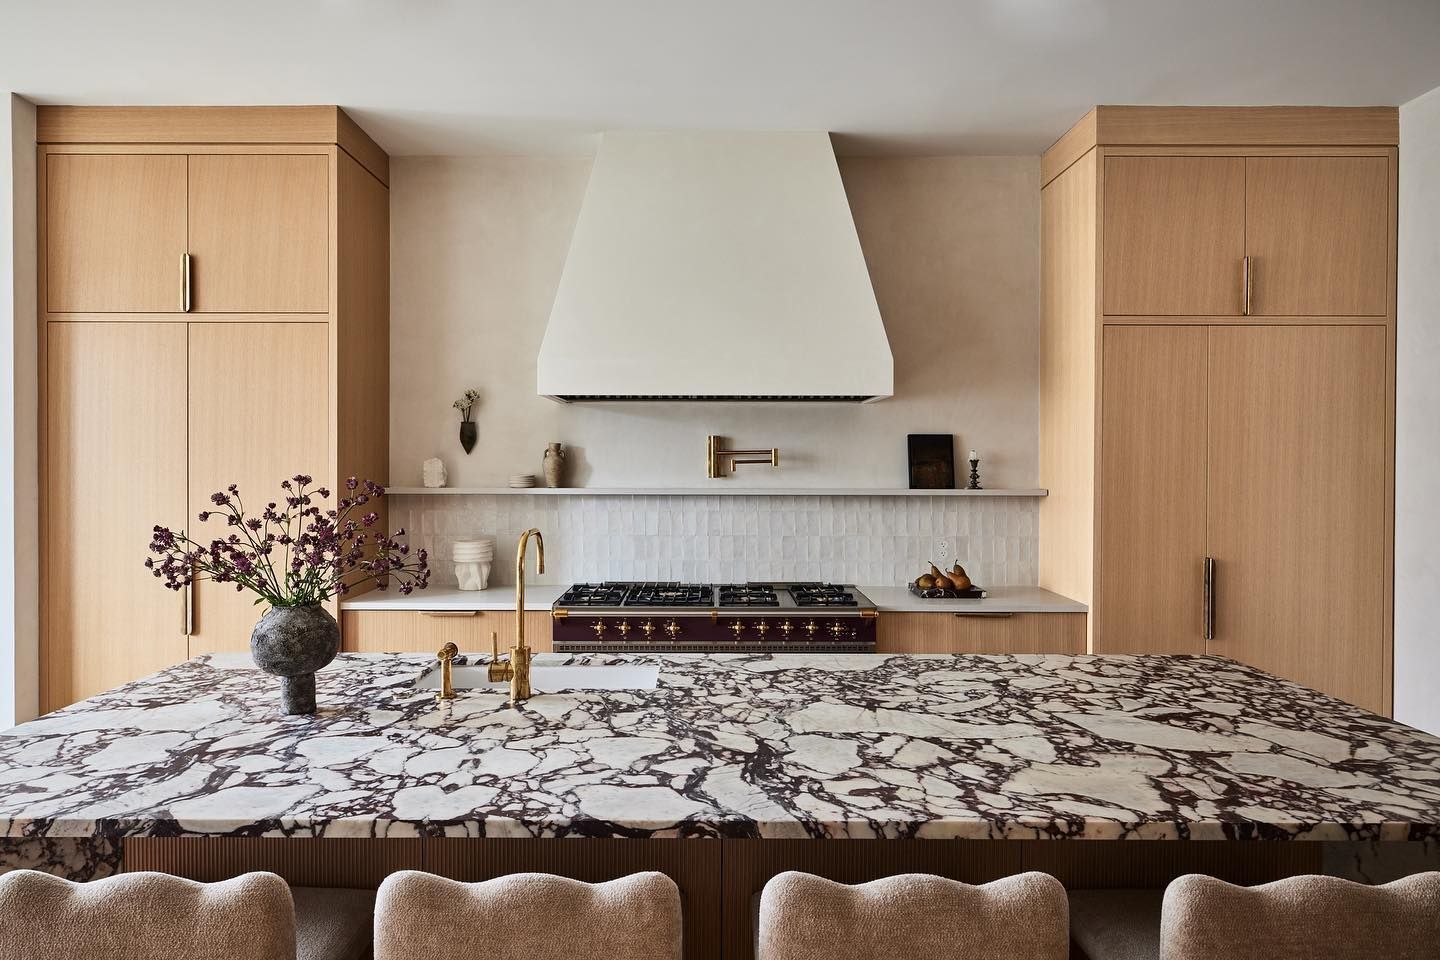 Viola Calcatta Marble kitchen countertop Stone @basstonenyc corvino.design